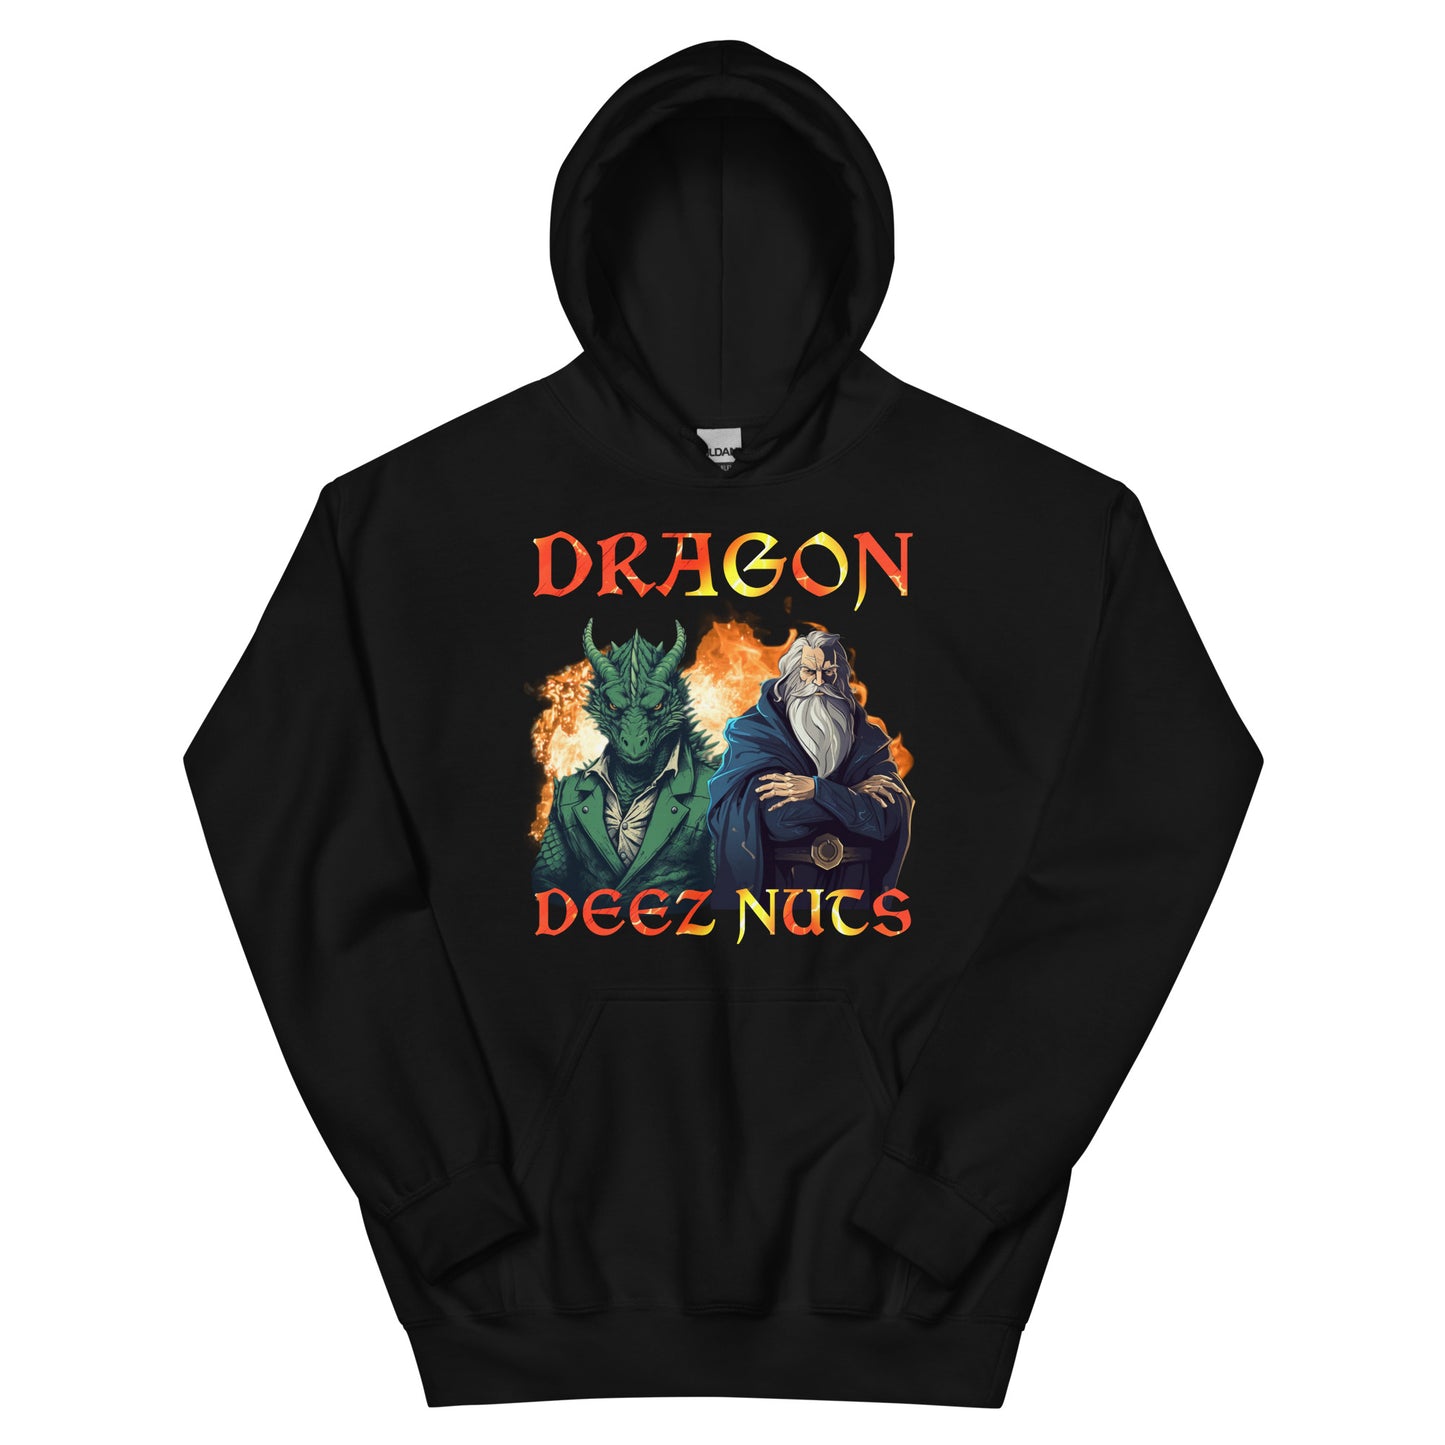 Dragon deez nutz (hoodie)